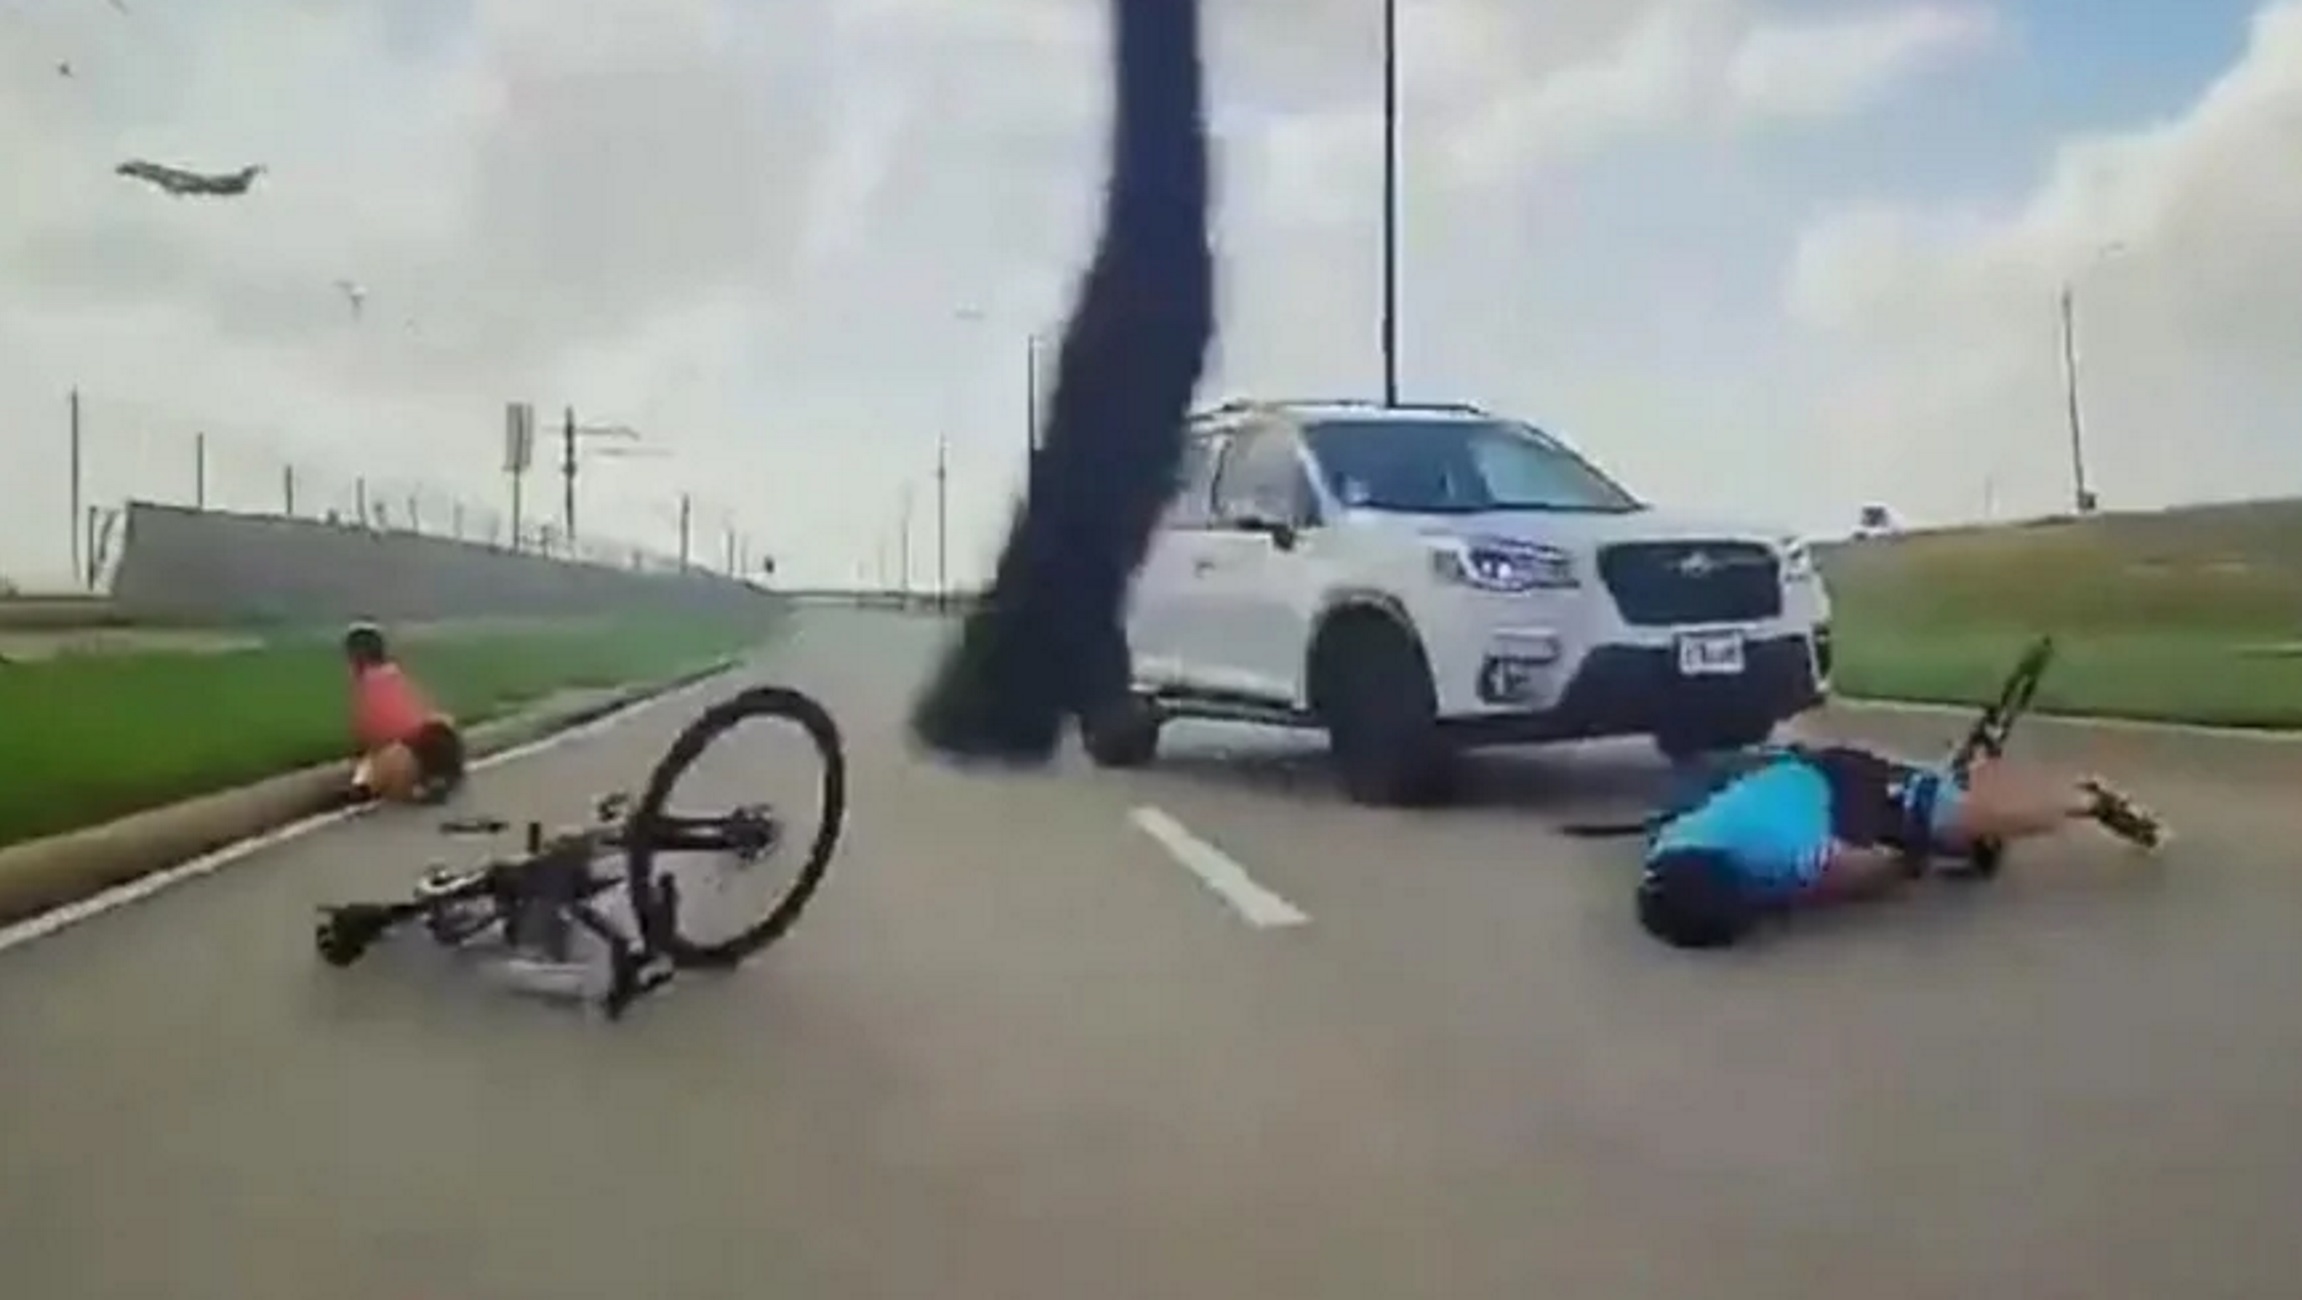 Βίντεο με τη στιγμή που αυτοκίνητο παρασύρει δύο ποδηλάτες στο Τέξας των ΗΠΑ και πατάει τον έναν